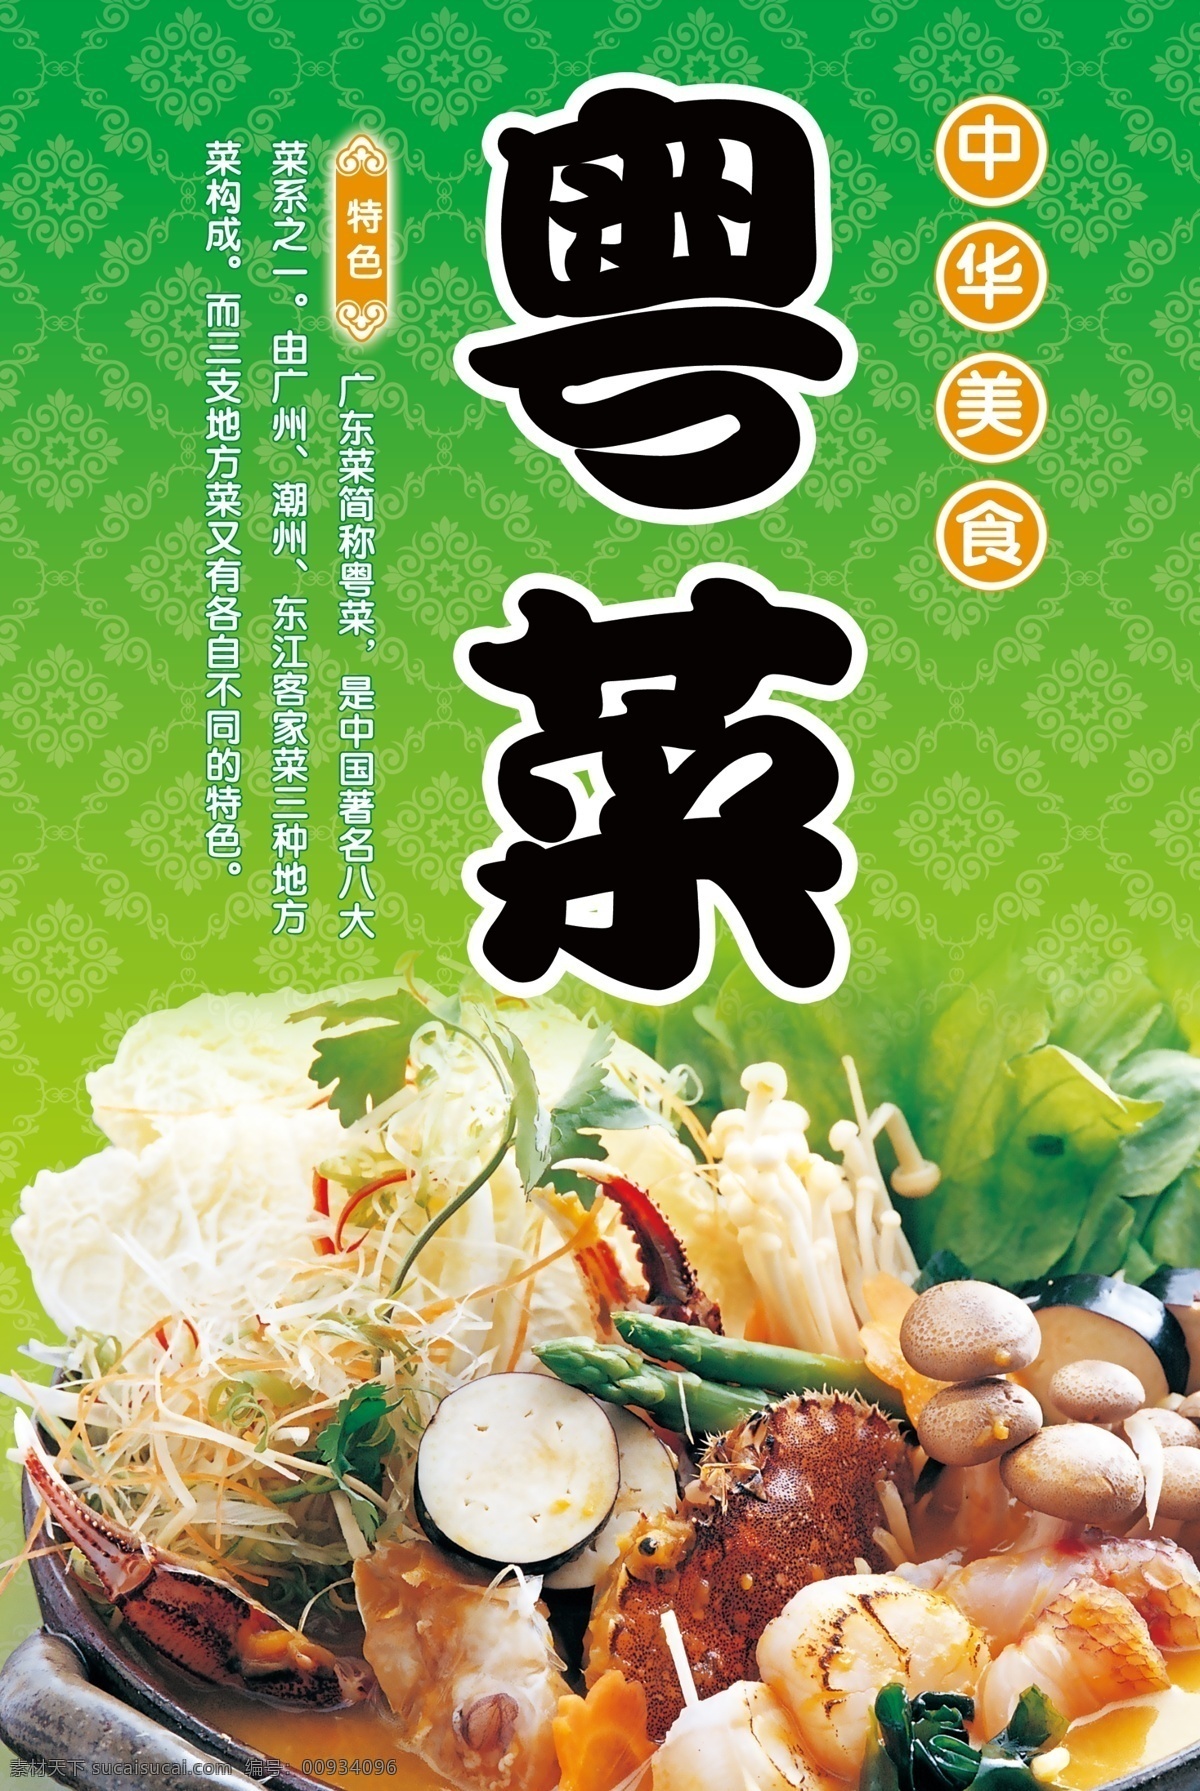 粤菜 食品餐饮 平面模板 分层 平面广告 海报模板 海报招贴 分层psd 设计素材 psd源文件 绿色